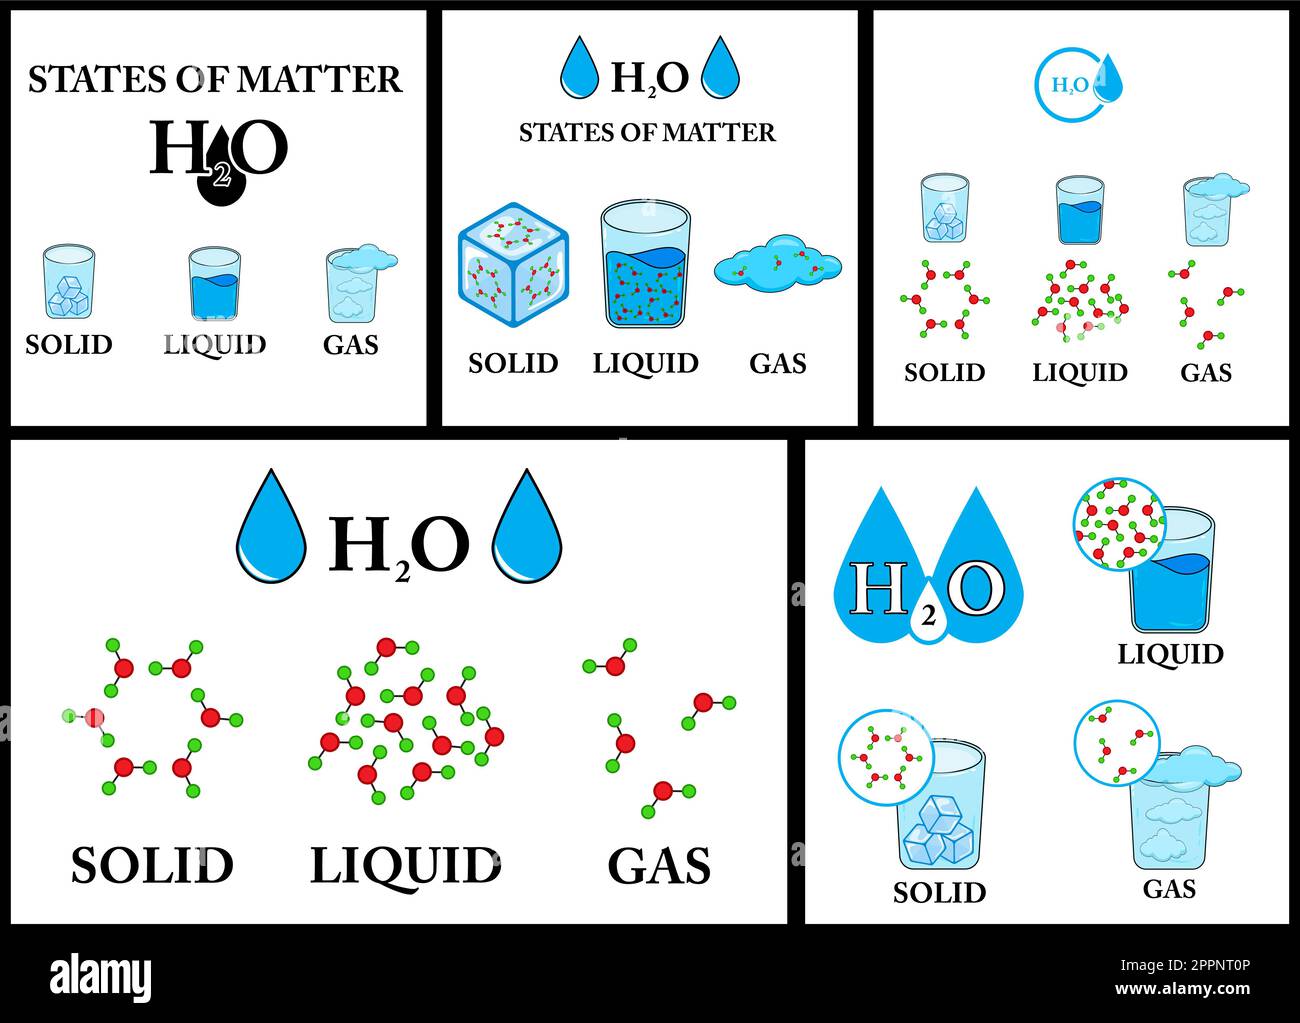 Diagramme de la densité de la matière avec le gaz, l'eau liquide et l'eau solide Illustration de Vecteur